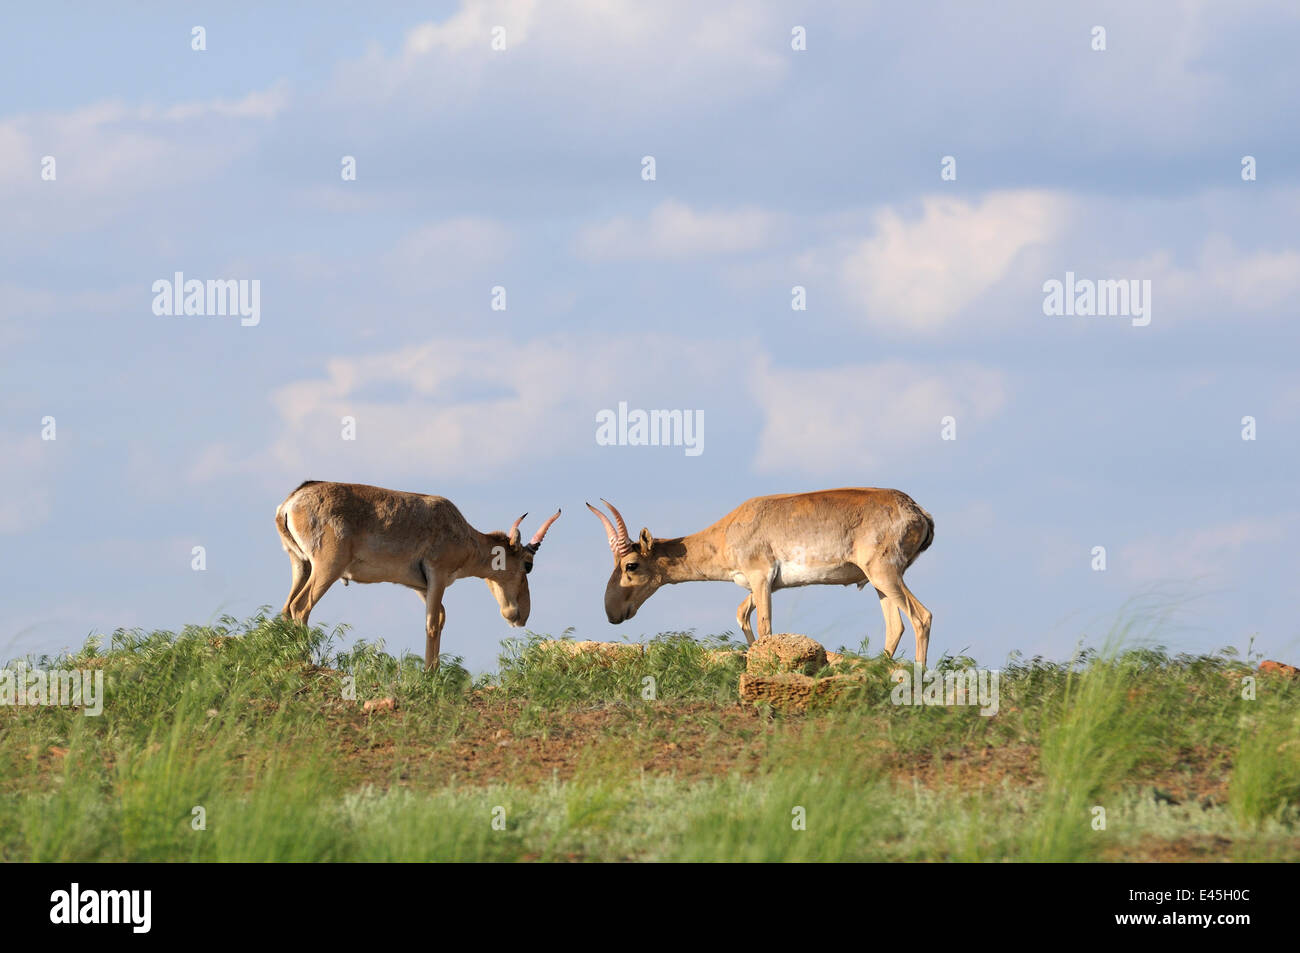 Deux hommes les antilopes Saïga (Saiga tatarica) Cherniye zemli (terre noire), Réserve naturelle de Kalmoukie, en Russie, en mai 2009 Banque D'Images